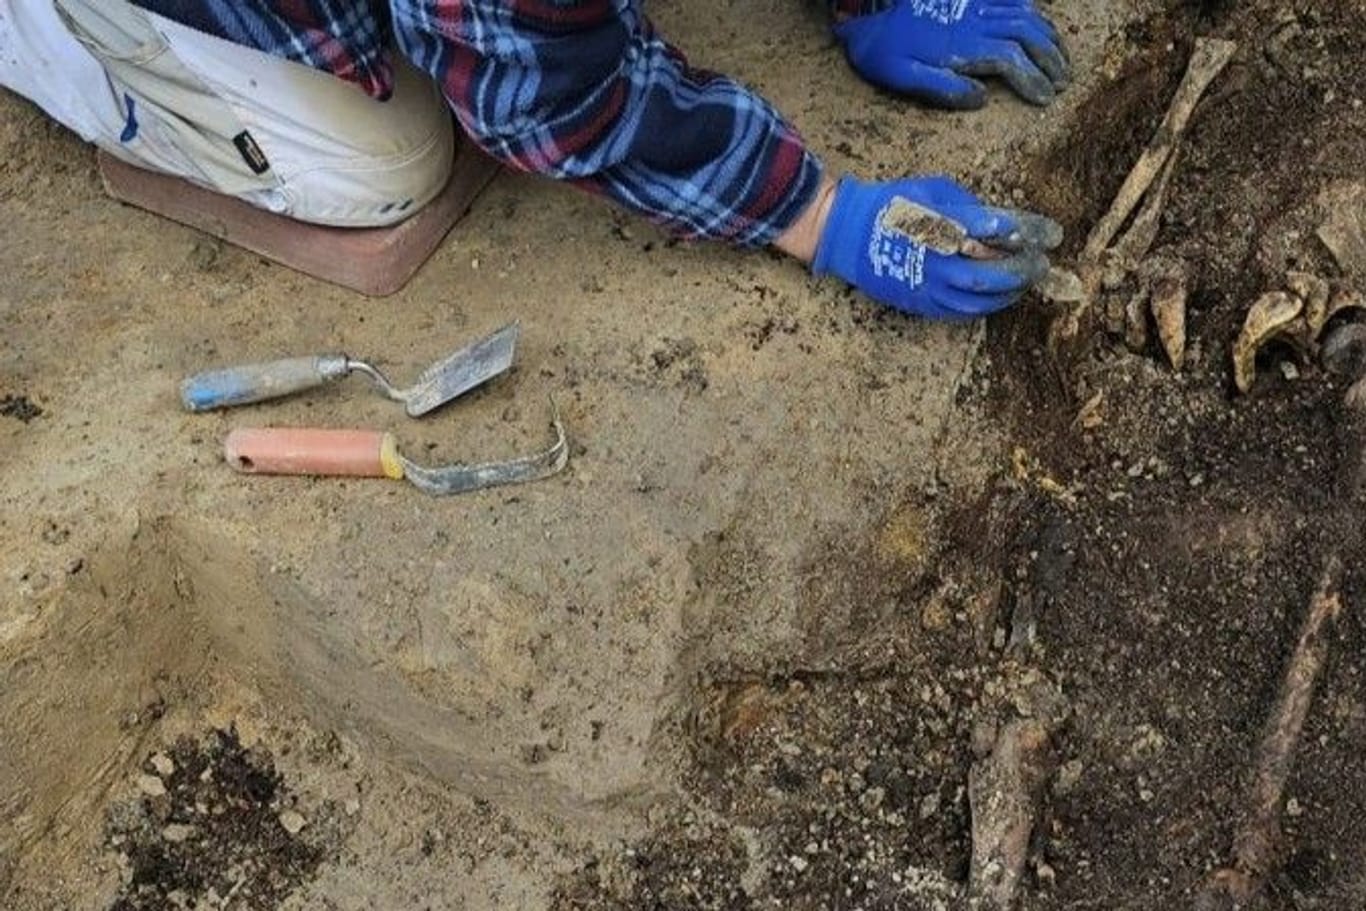 Knochenreste: Bei aktuellen Ausgrabungen am Weberplatz konnten erhaltene Körperbestattungen gefunden werden.